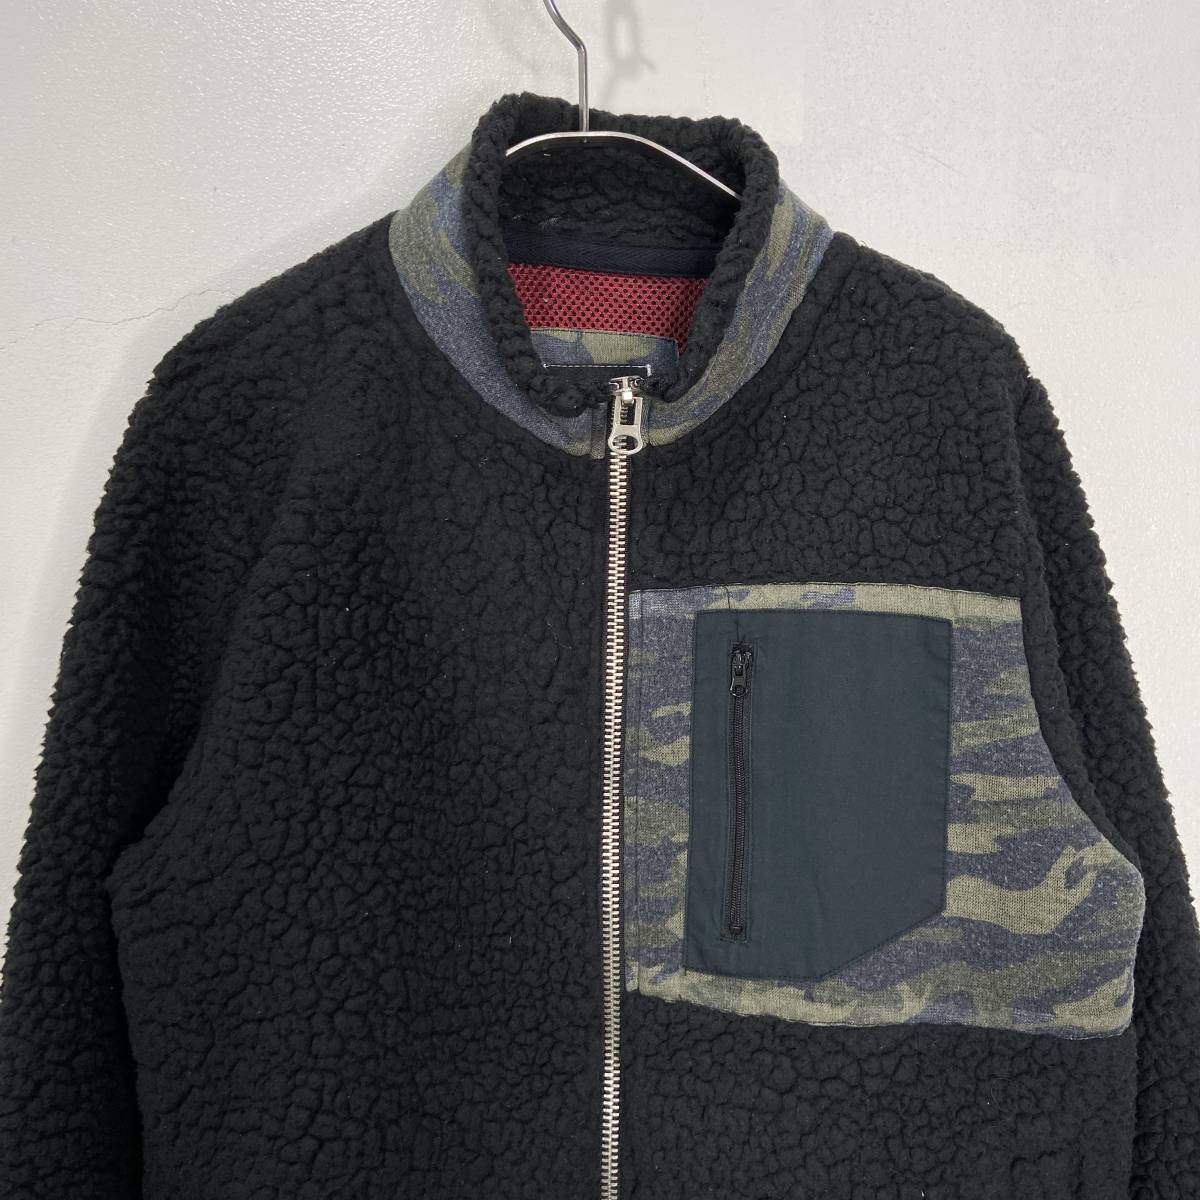  free shipping *SIERRADESIGNS* Sierra Design * boa fleece jacket * hand warmer * camouflage pattern * black *M*G23